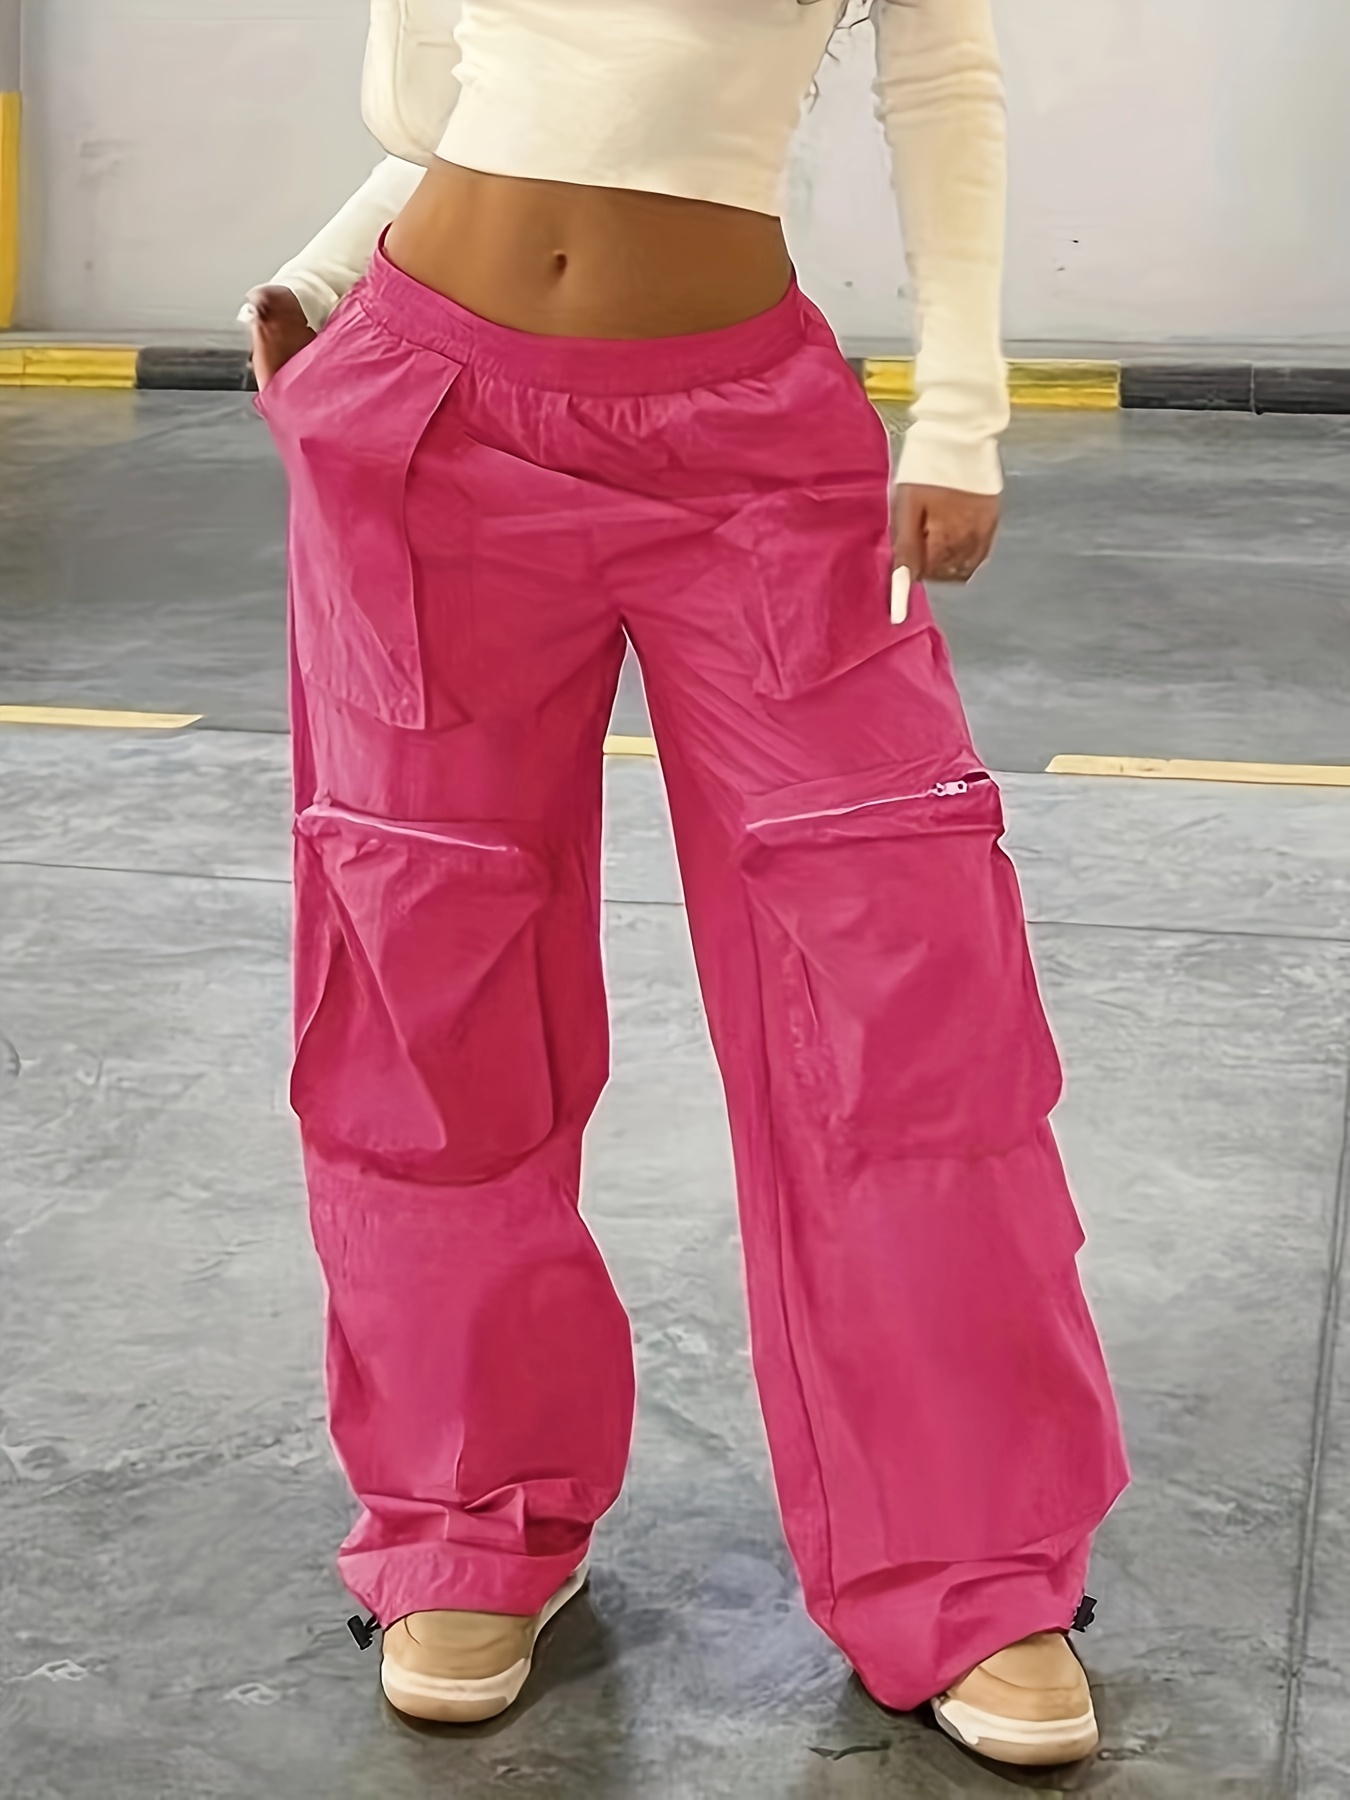 Comprar Pantalones Cargo para Mujer Cintura Elástica Hip Hop Color